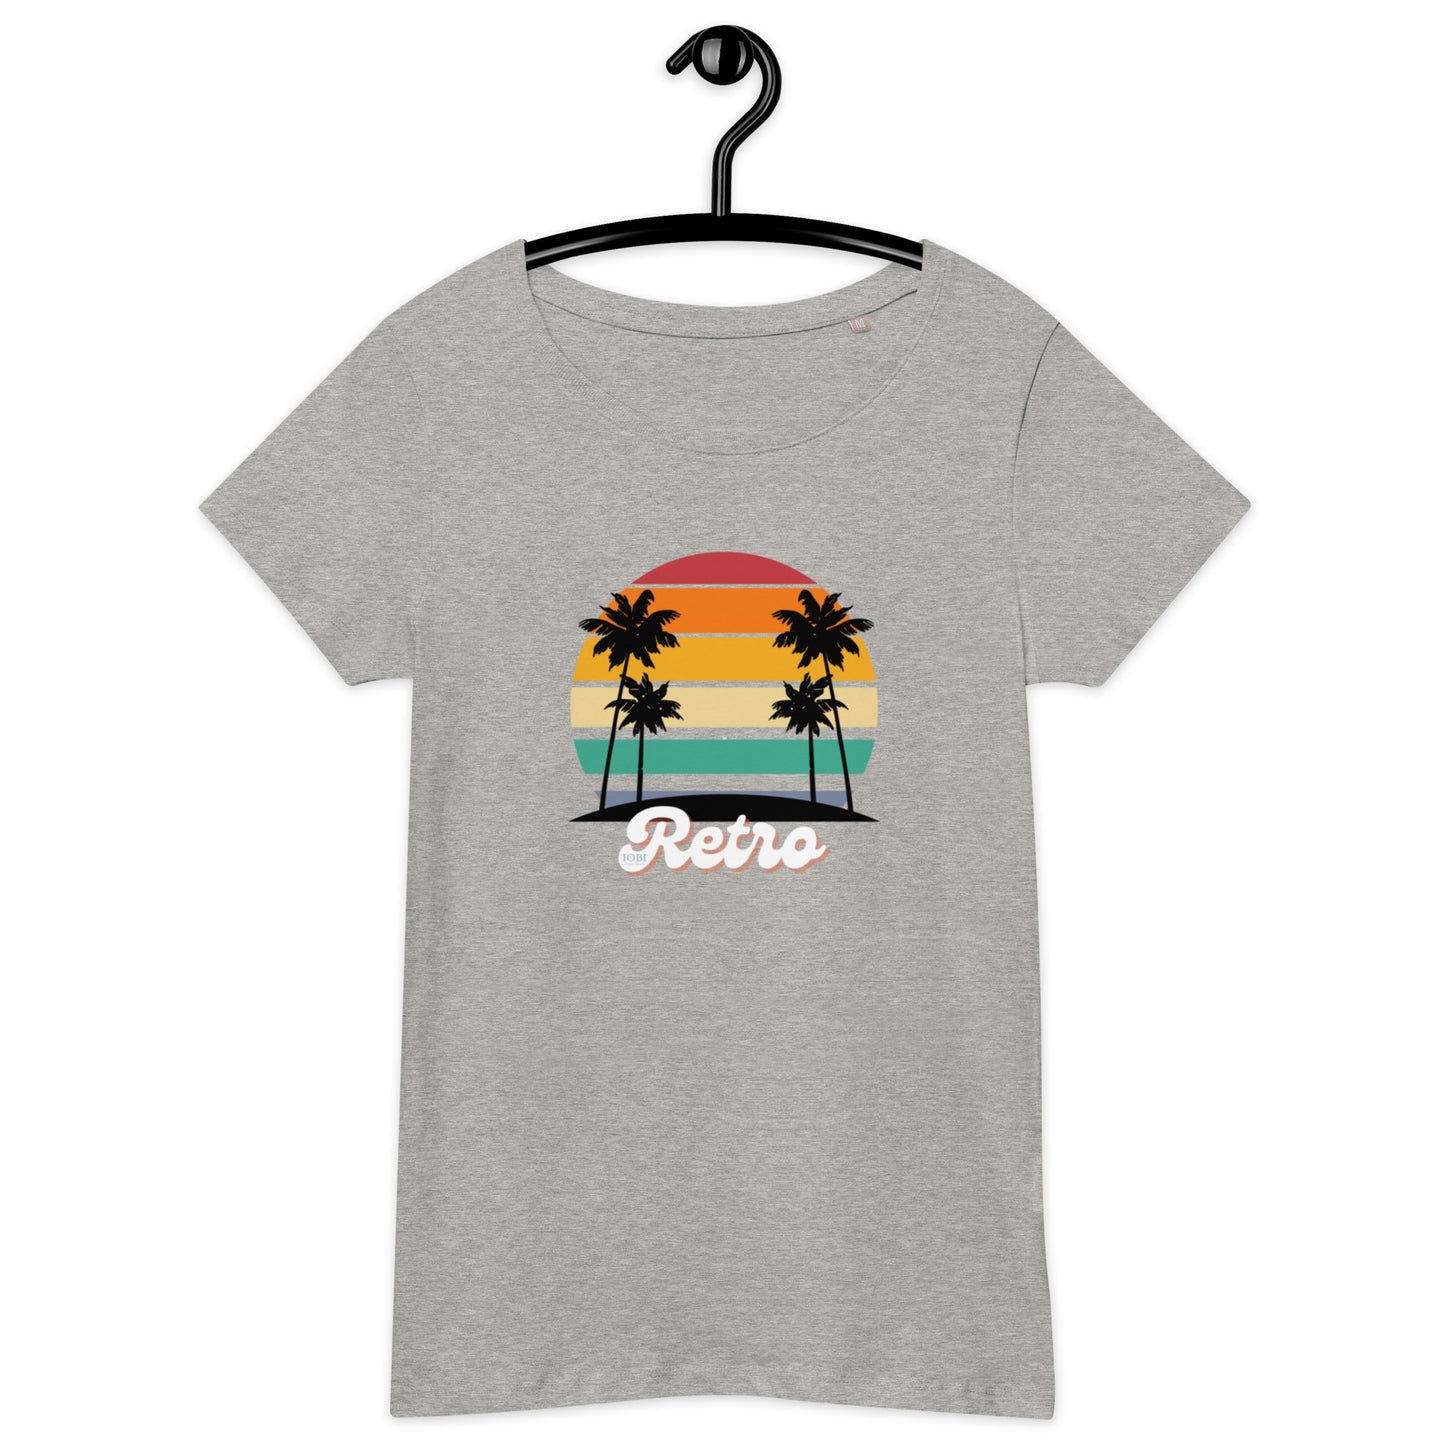 Women’s Basic Organic Eco-Friendly T-Shirt Soft Scoop Neck Retro Design by IOBI Original Apparel